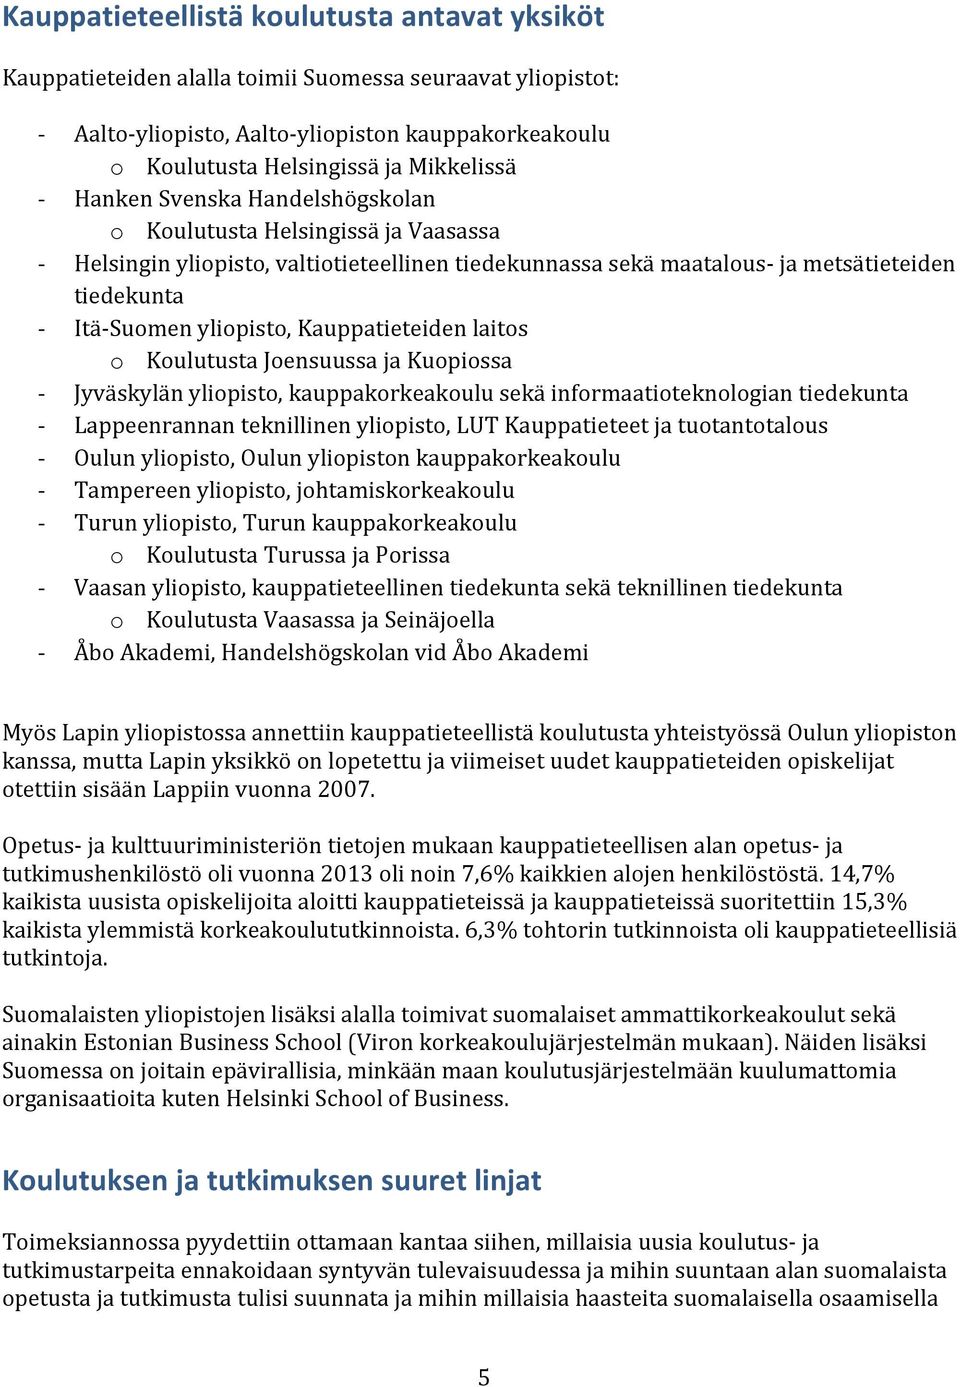 Suomen yliopisto, Kauppatieteiden laitos o Koulutusta Joensuussa ja Kuopiossa Jyväskylän yliopisto, kauppakorkeakoulu sekä informaatioteknologian tiedekunta Lappeenrannan teknillinen yliopisto, LUT